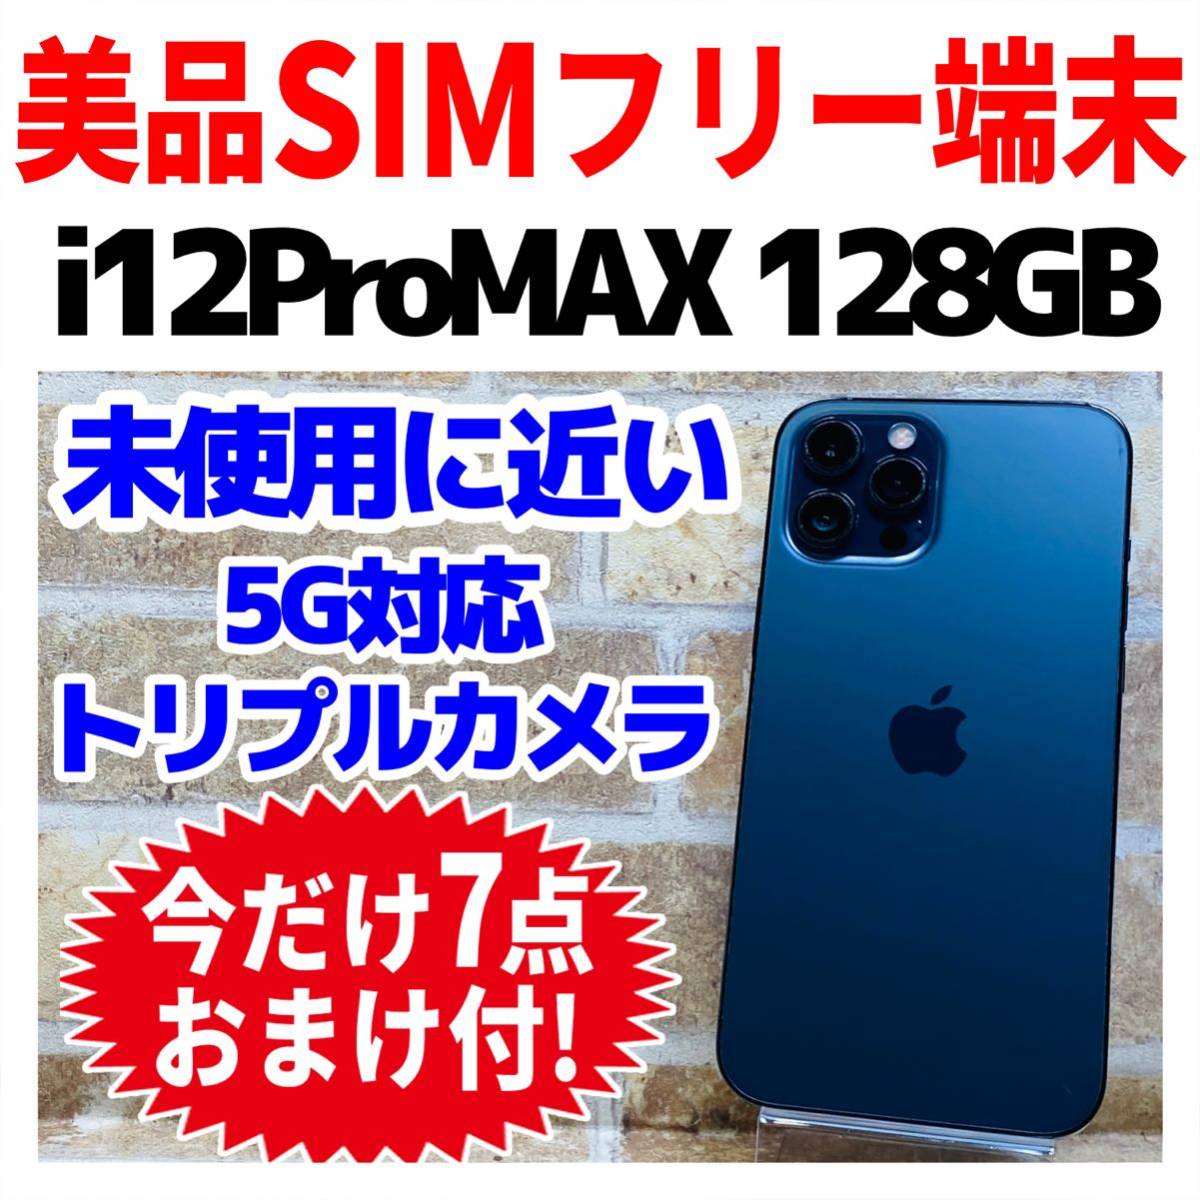 美品 SIMフリー iPhone12ProMAX 128GB 582 パシフィックブルー